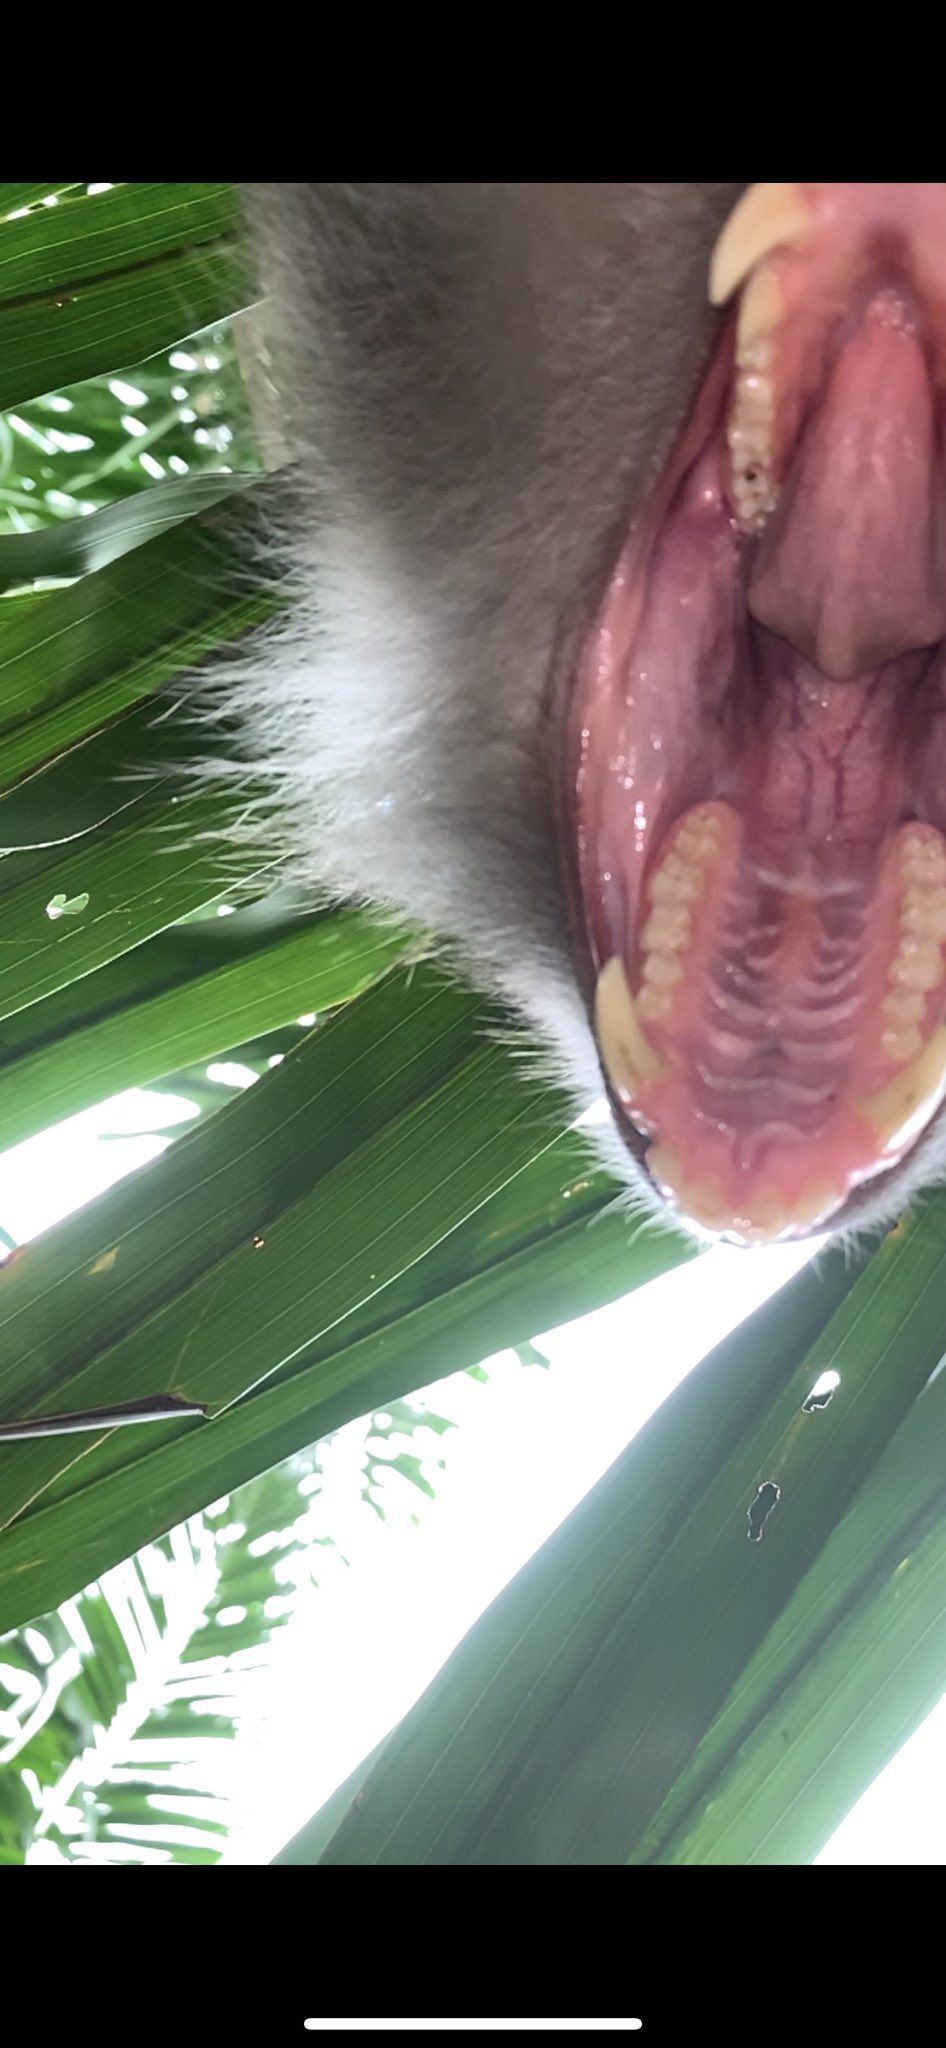 Incredibil! O maimuta i-a furat telefonul unui baiat si si-a facut selfie-uri cu el inainte sa il arunce in jungla! :) Imaginile cu maimuta au devenit virale_1